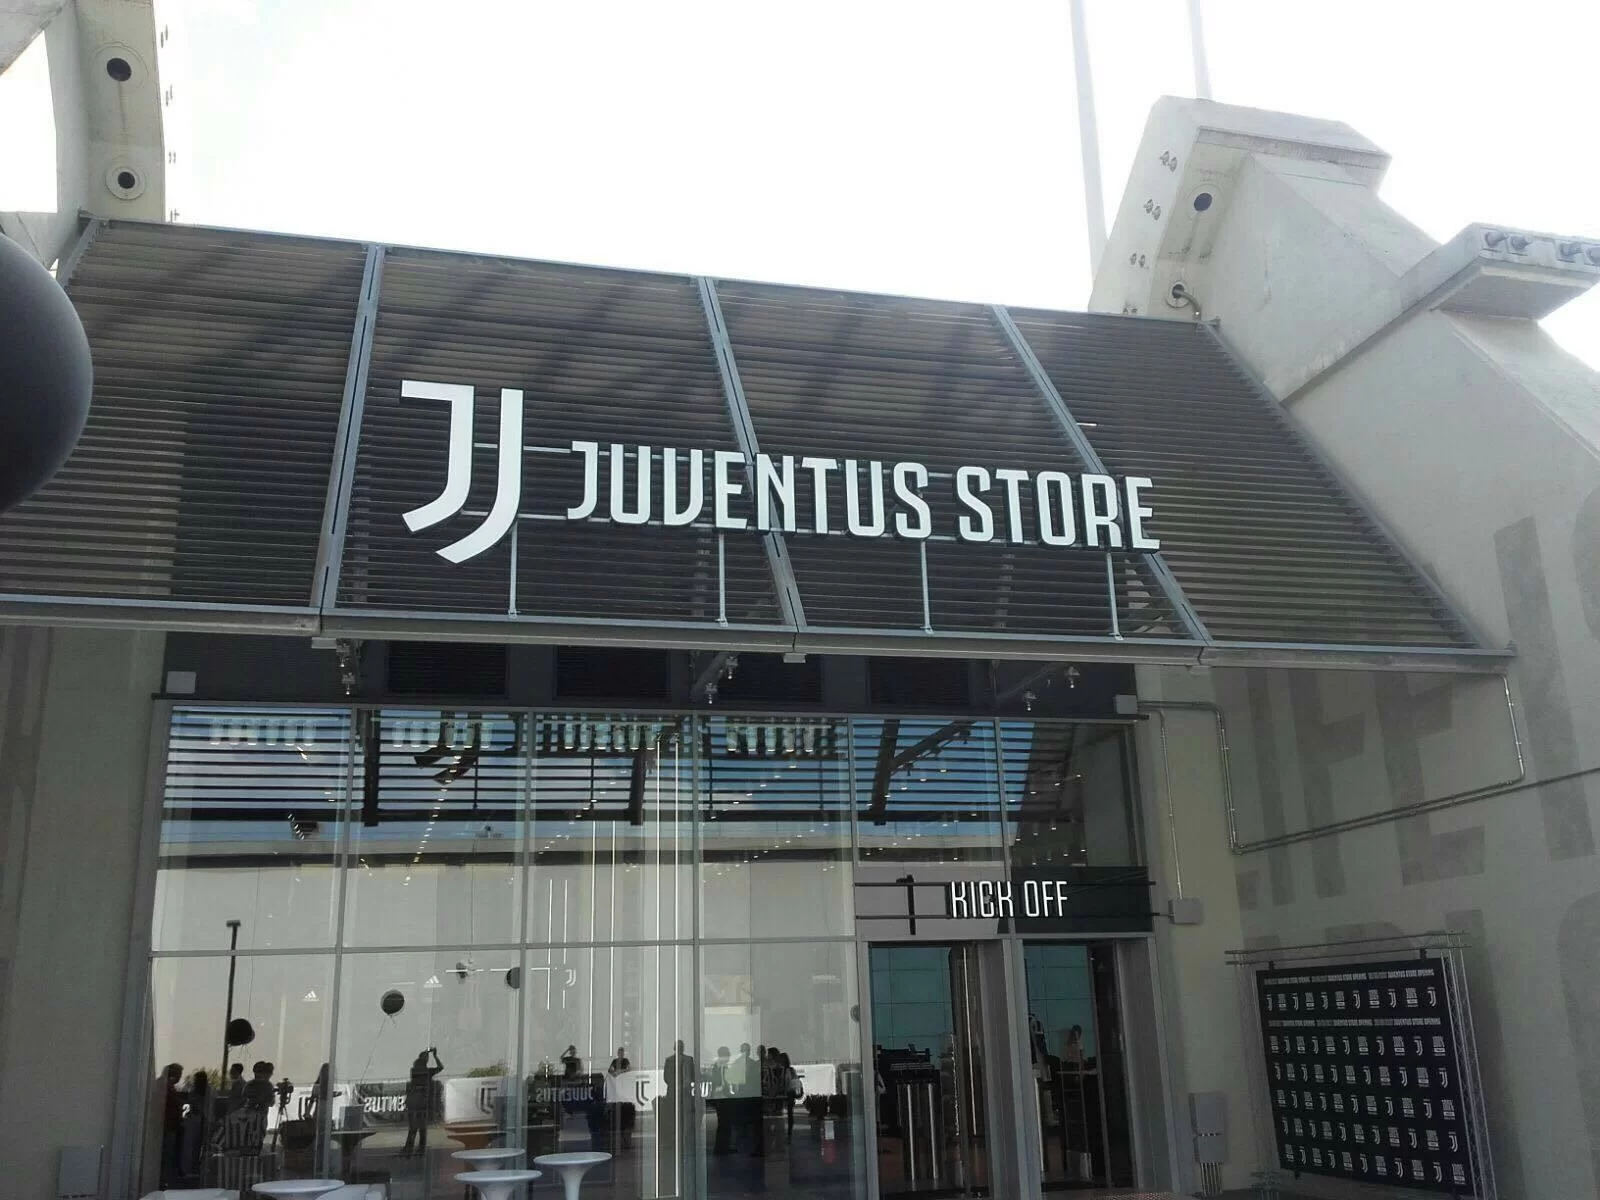 La vendita diretta delle maglie dà ragione alla Juventus: che numeri per i bianconeri!